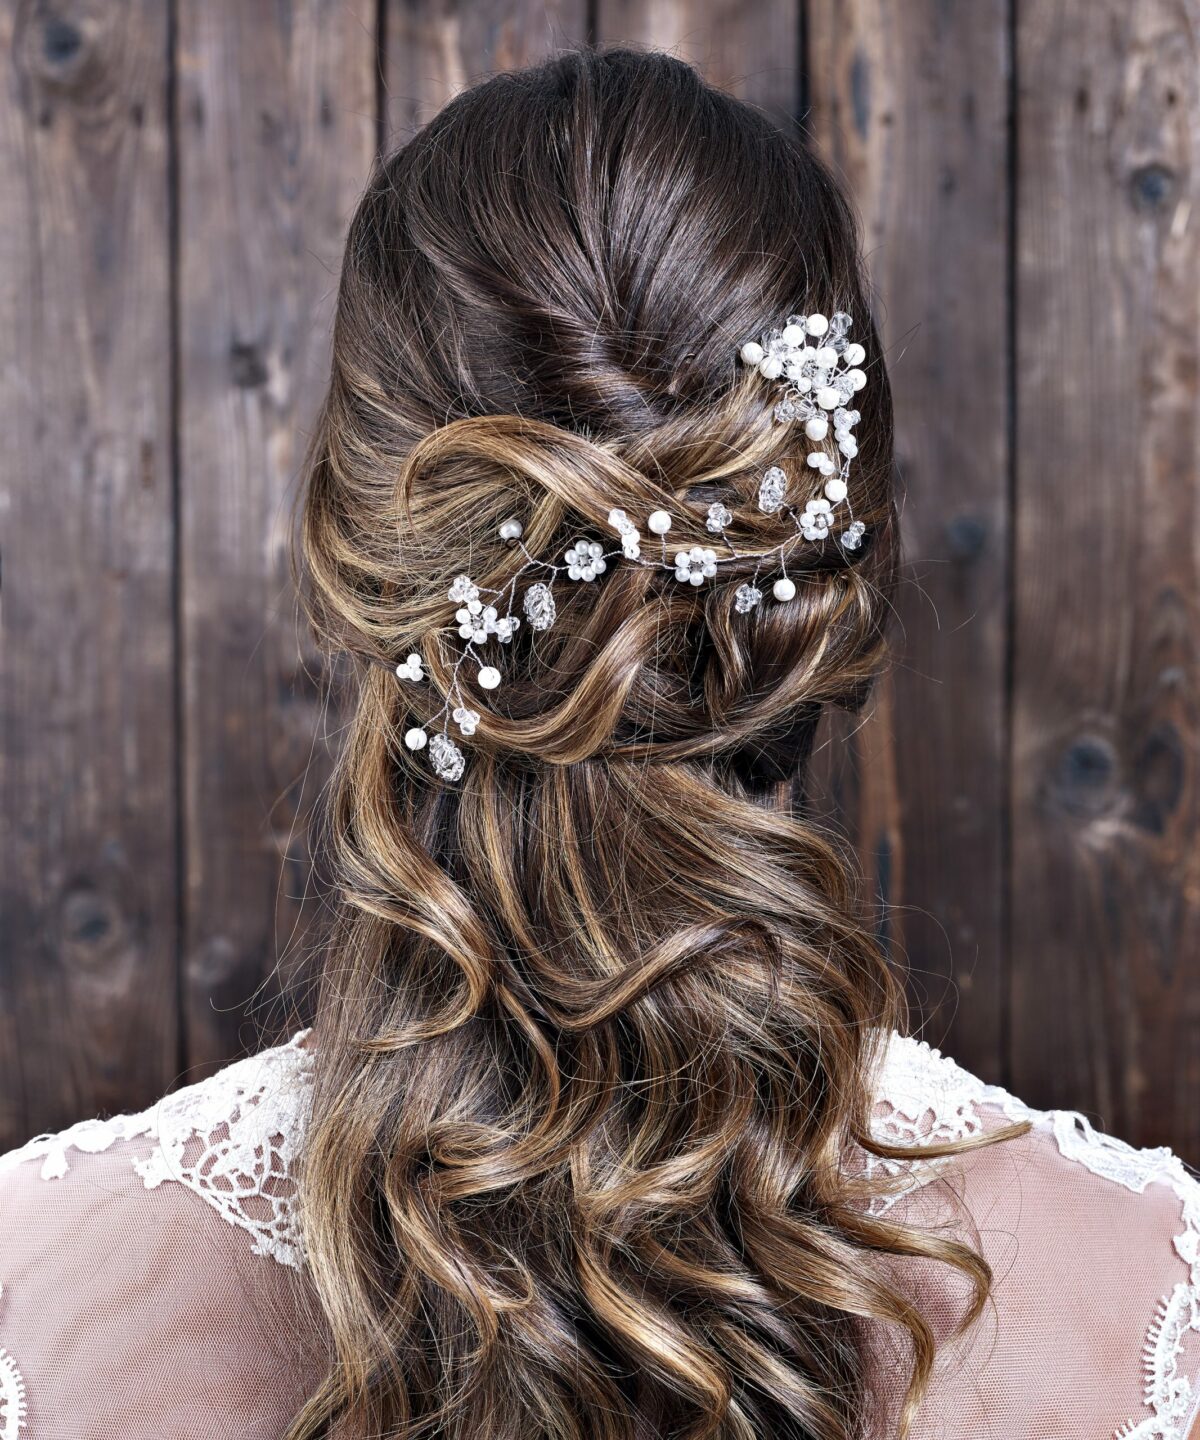 Dunkelhaarige Braut mit festlicher Frisur trägt einen Haardraht mit Blumen und Perlen von CELEBRIDE Trisa Accessoires, vor dunkler Holzwand.